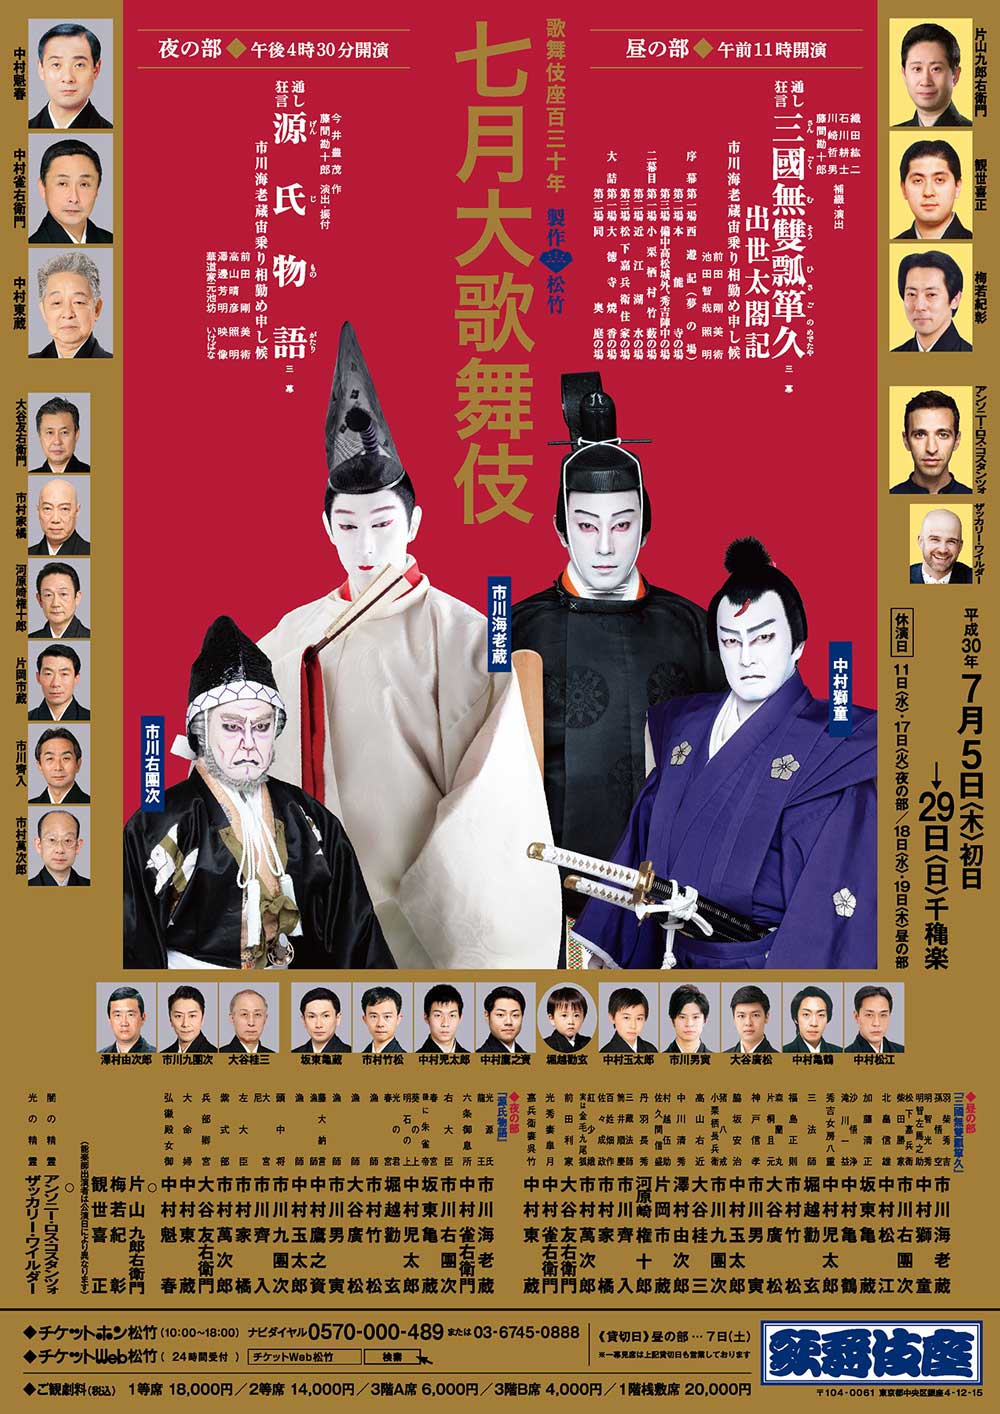 July at the kabukiza